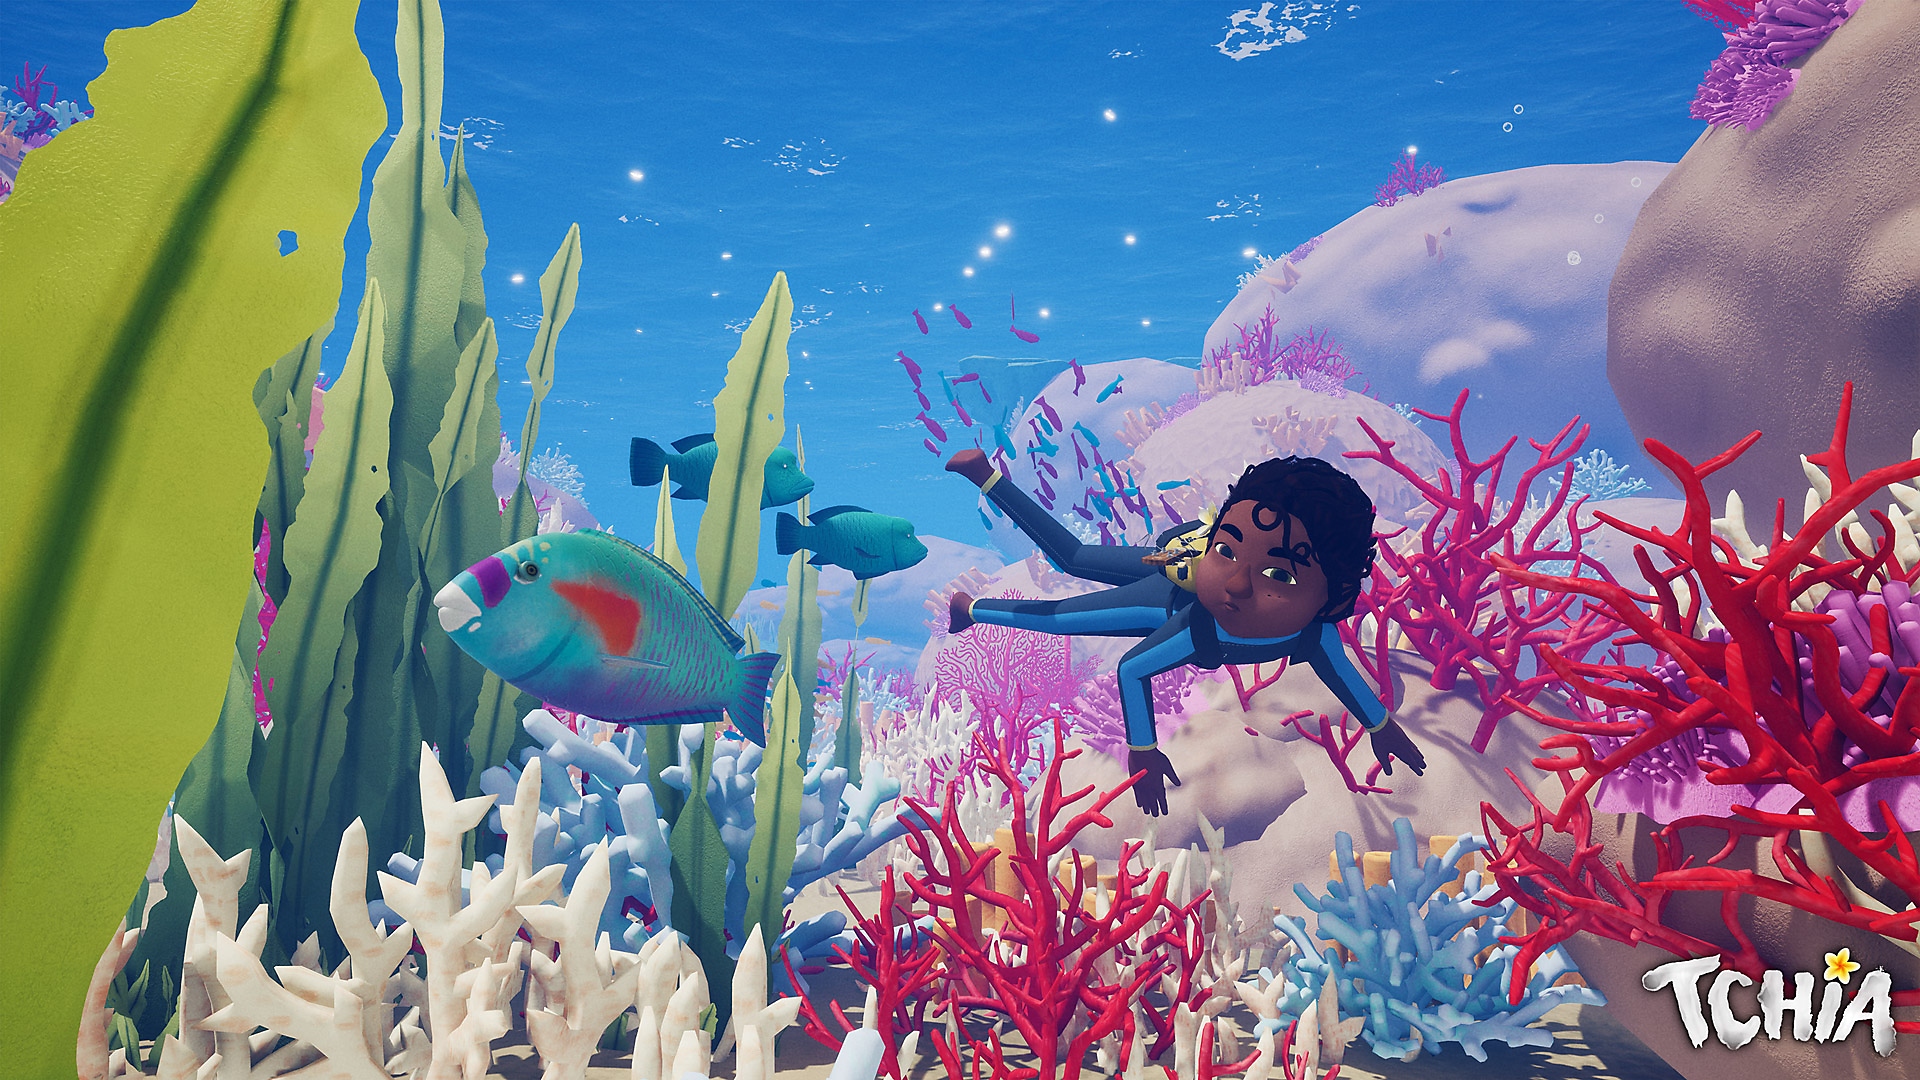 Tchia - Arte de herói mostrando a personagem principal nadando em um ambiente subaquático